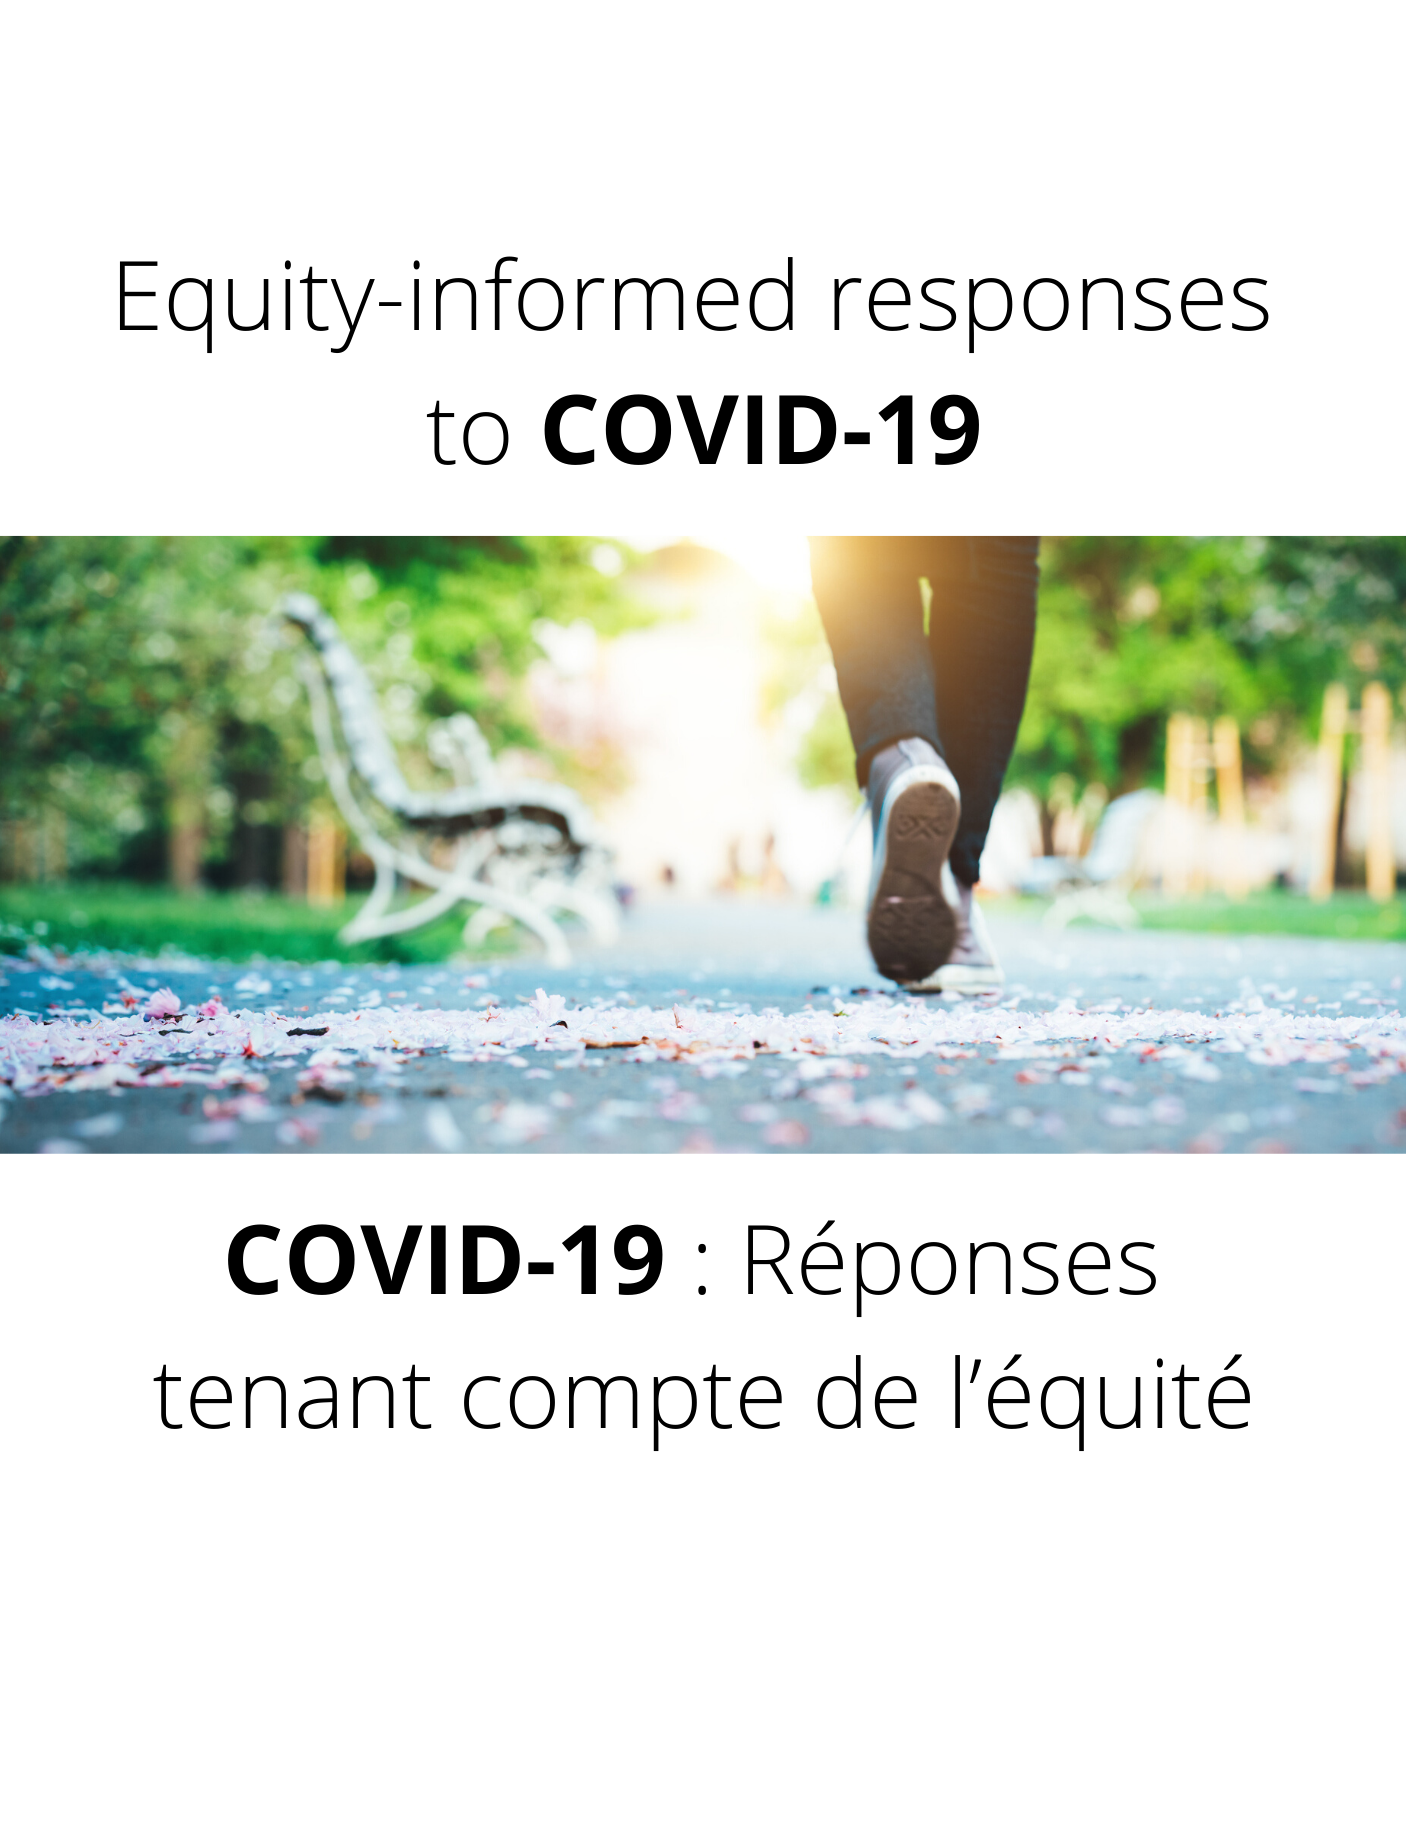 Coronavirus (COVID-19) and Indigenous communities